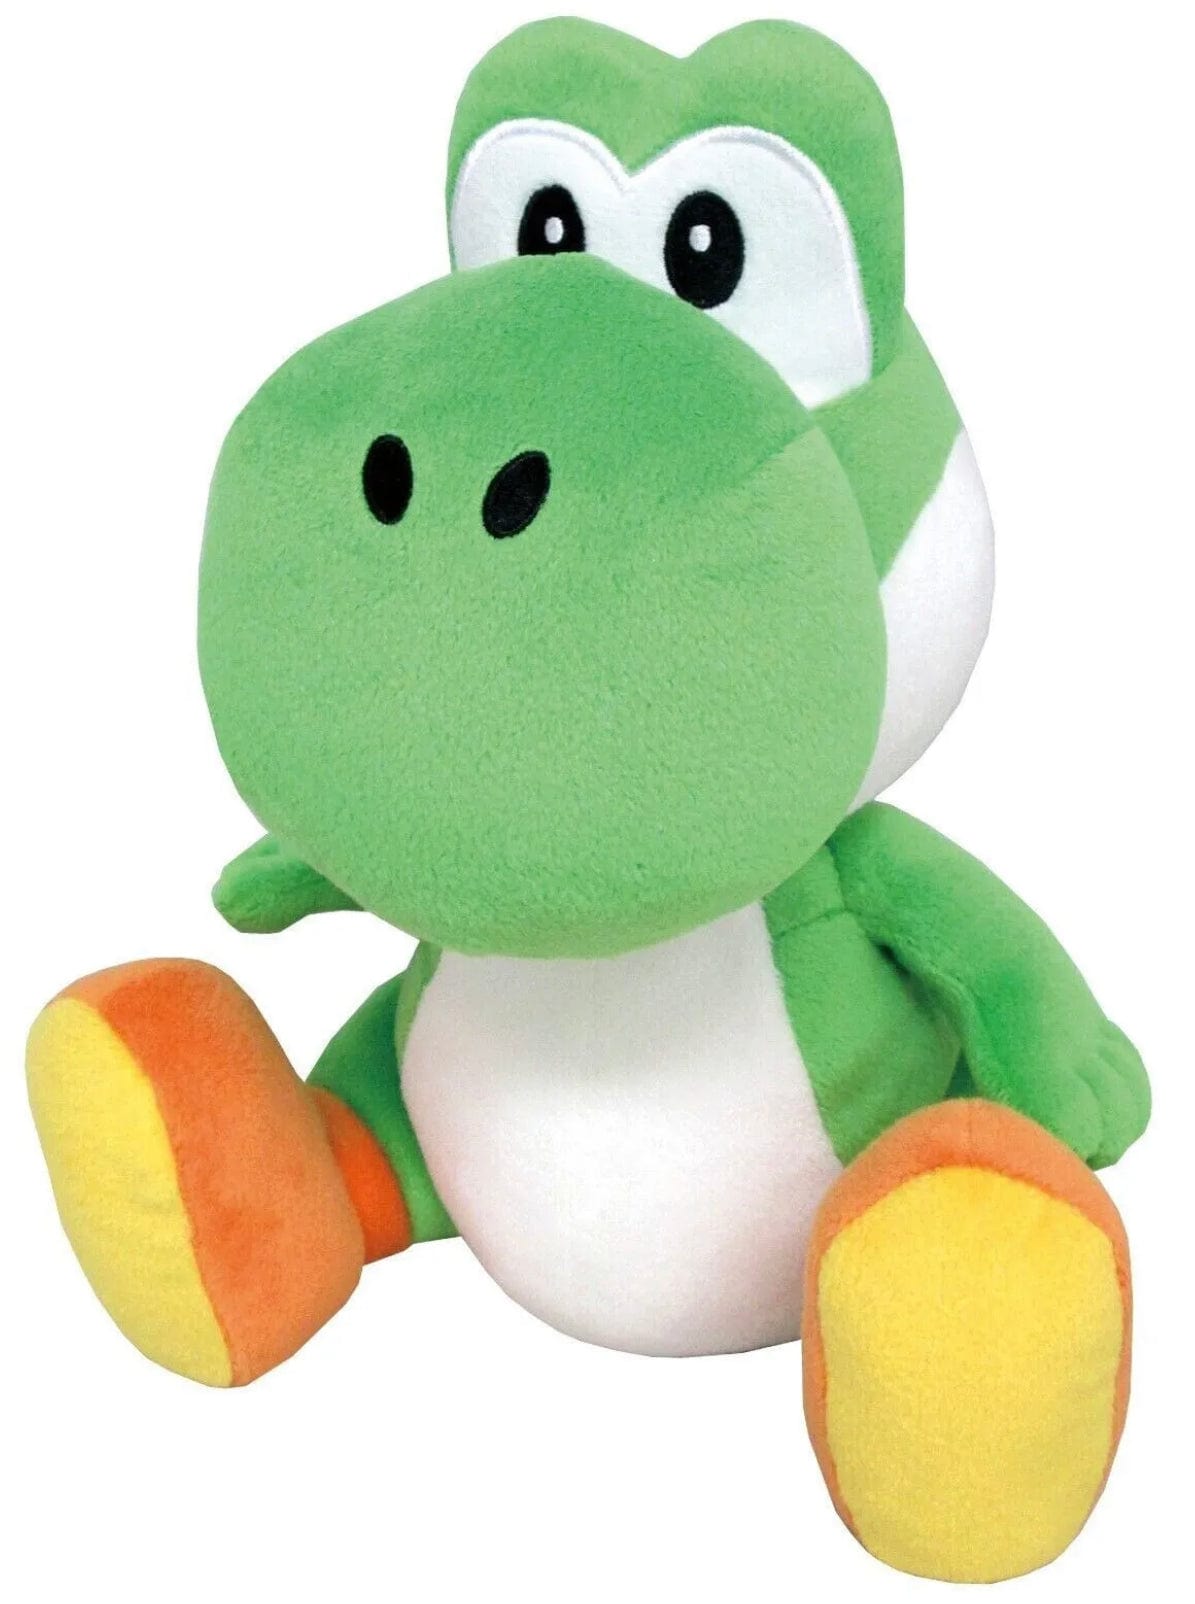 Little Buddy Super Mario All Star Yoshi - Green Yoshi (Medium) Plush 10” 25.4 cm Height 